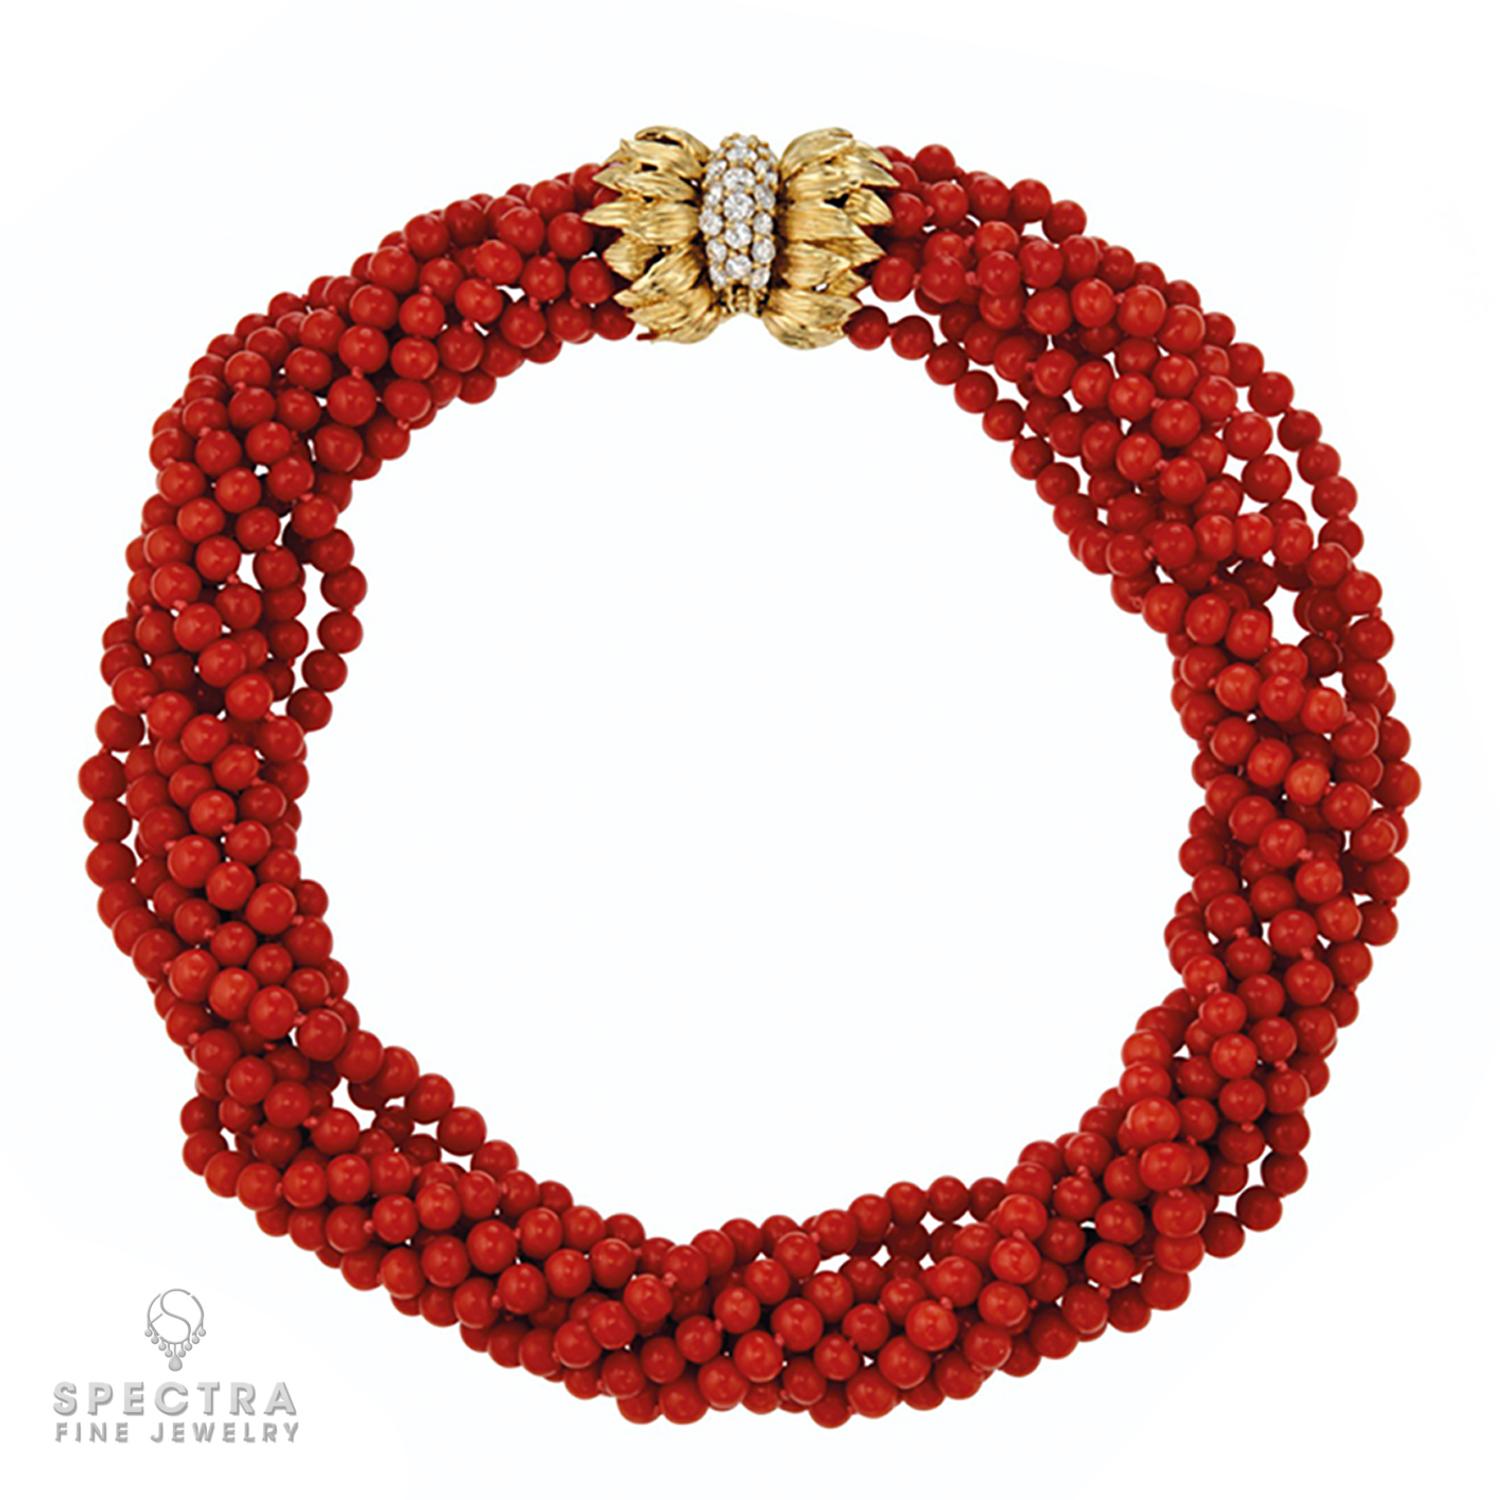 Die Suite aus Korallen-Diamanten-Halskette und -Armband von Cartier ist ein Beweis für raffinierte Eleganz und anspruchsvolles Design. Dieses exquisite Ensemble besteht aus einer Torsade-Halskette und einem perfekt darauf abgestimmten